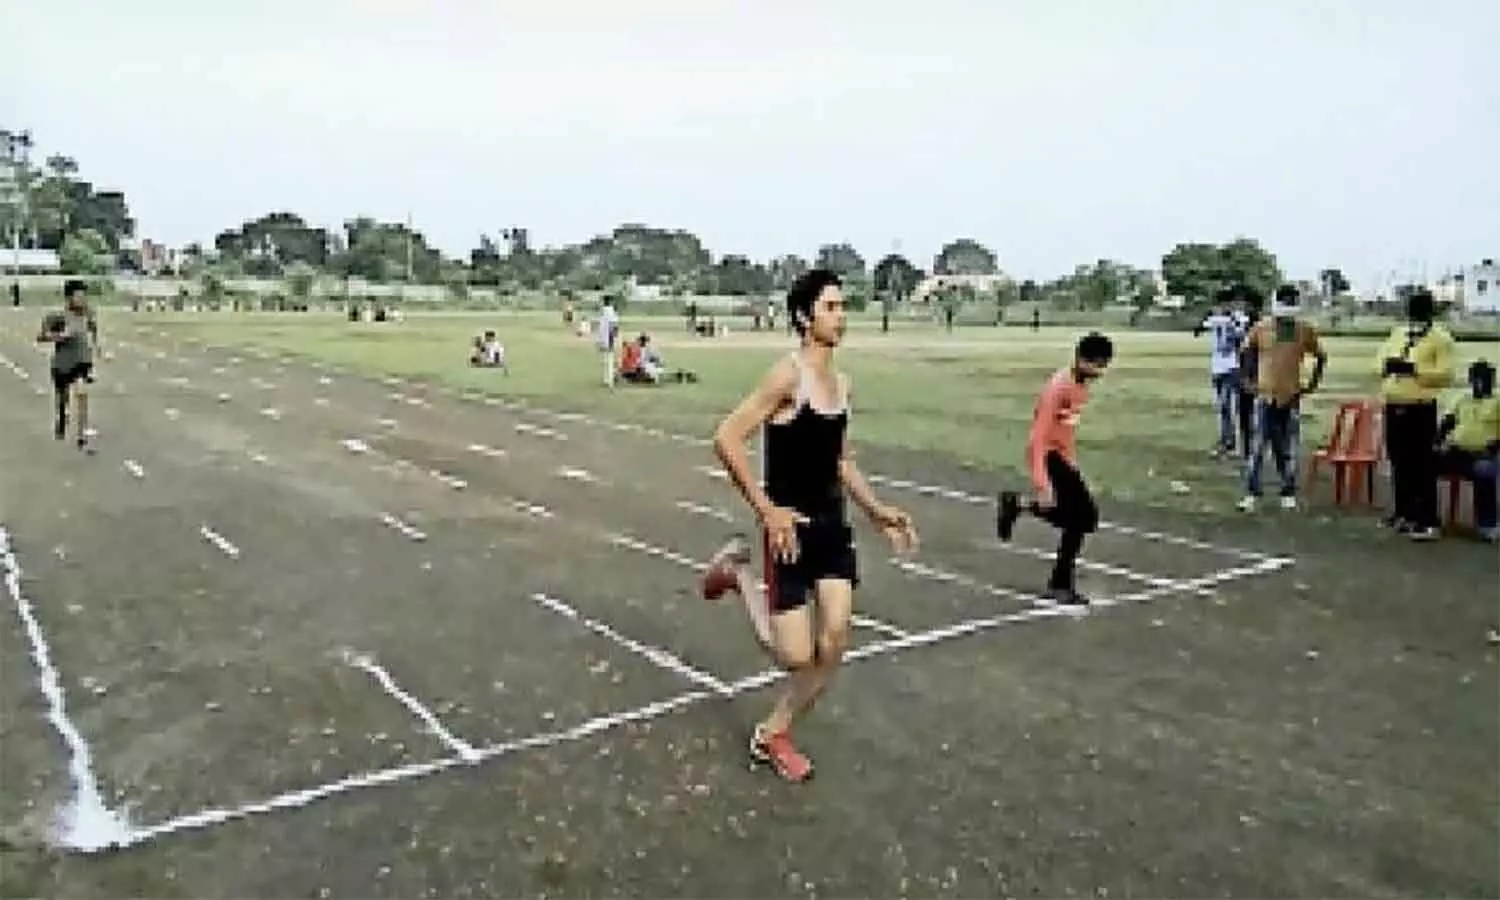 रीवा जिले के छात्र एमपी के पहले खेलकूद स्कूल में ले सकते हैं प्रवेश, यह दिखानी होगी दक्षता